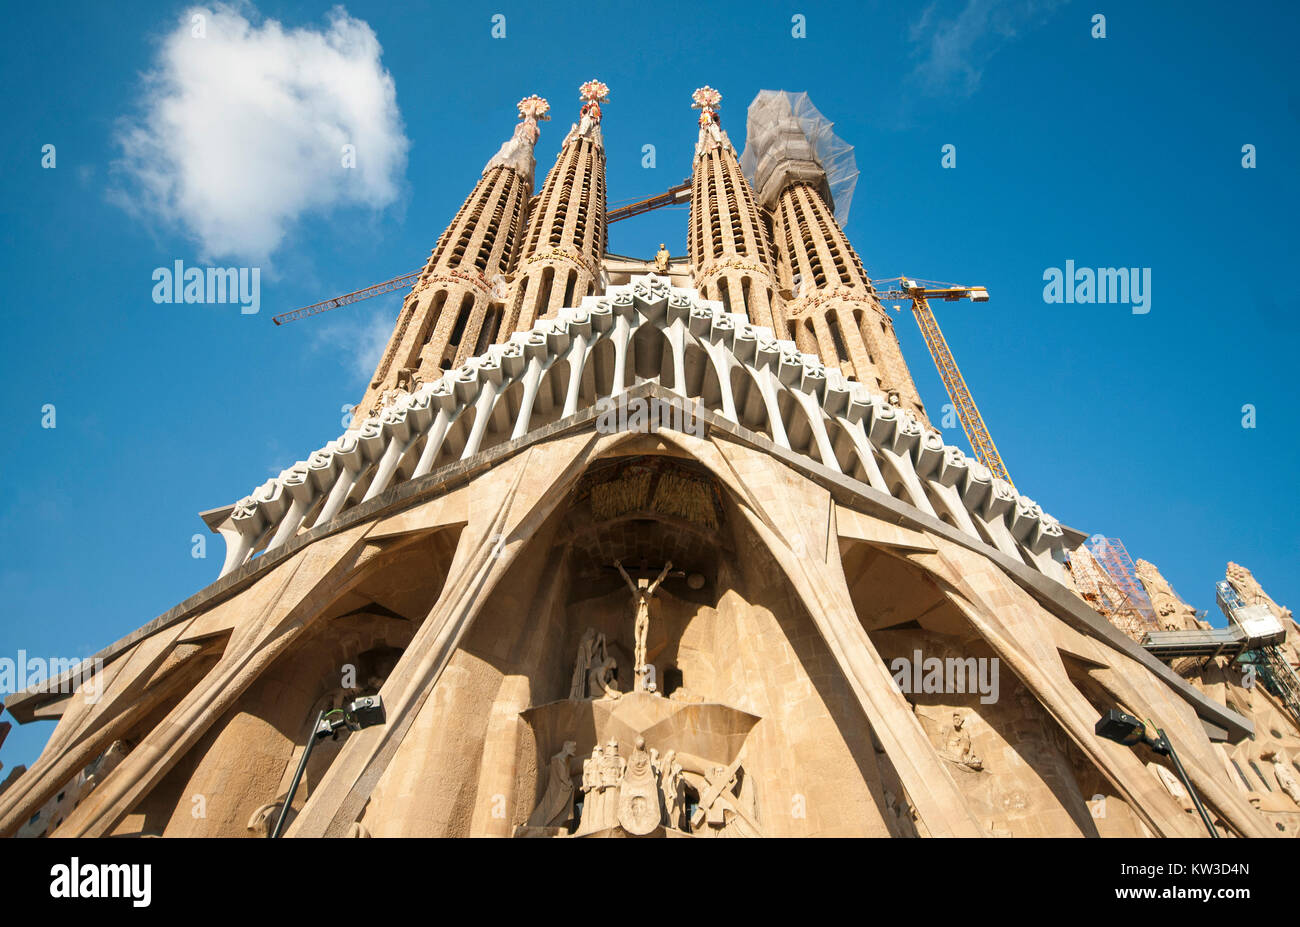 L'église Sagrada Familia, Barcelone - Espagne, Septembre 2016 Banque D'Images